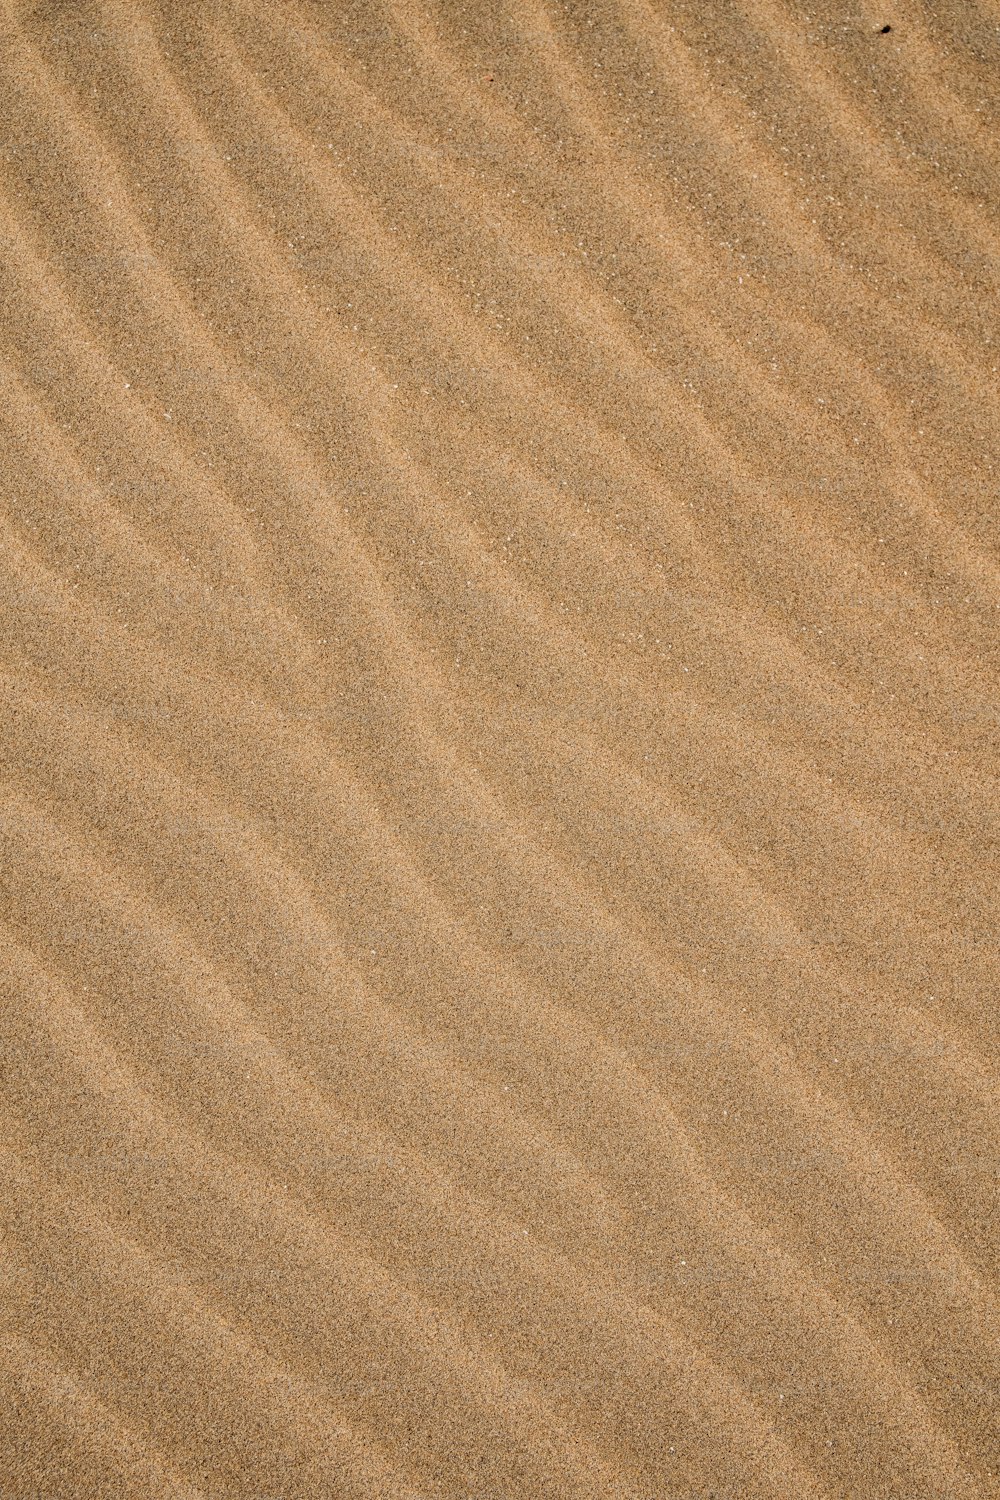 Un uccello è in piedi nella sabbia sulla spiaggia